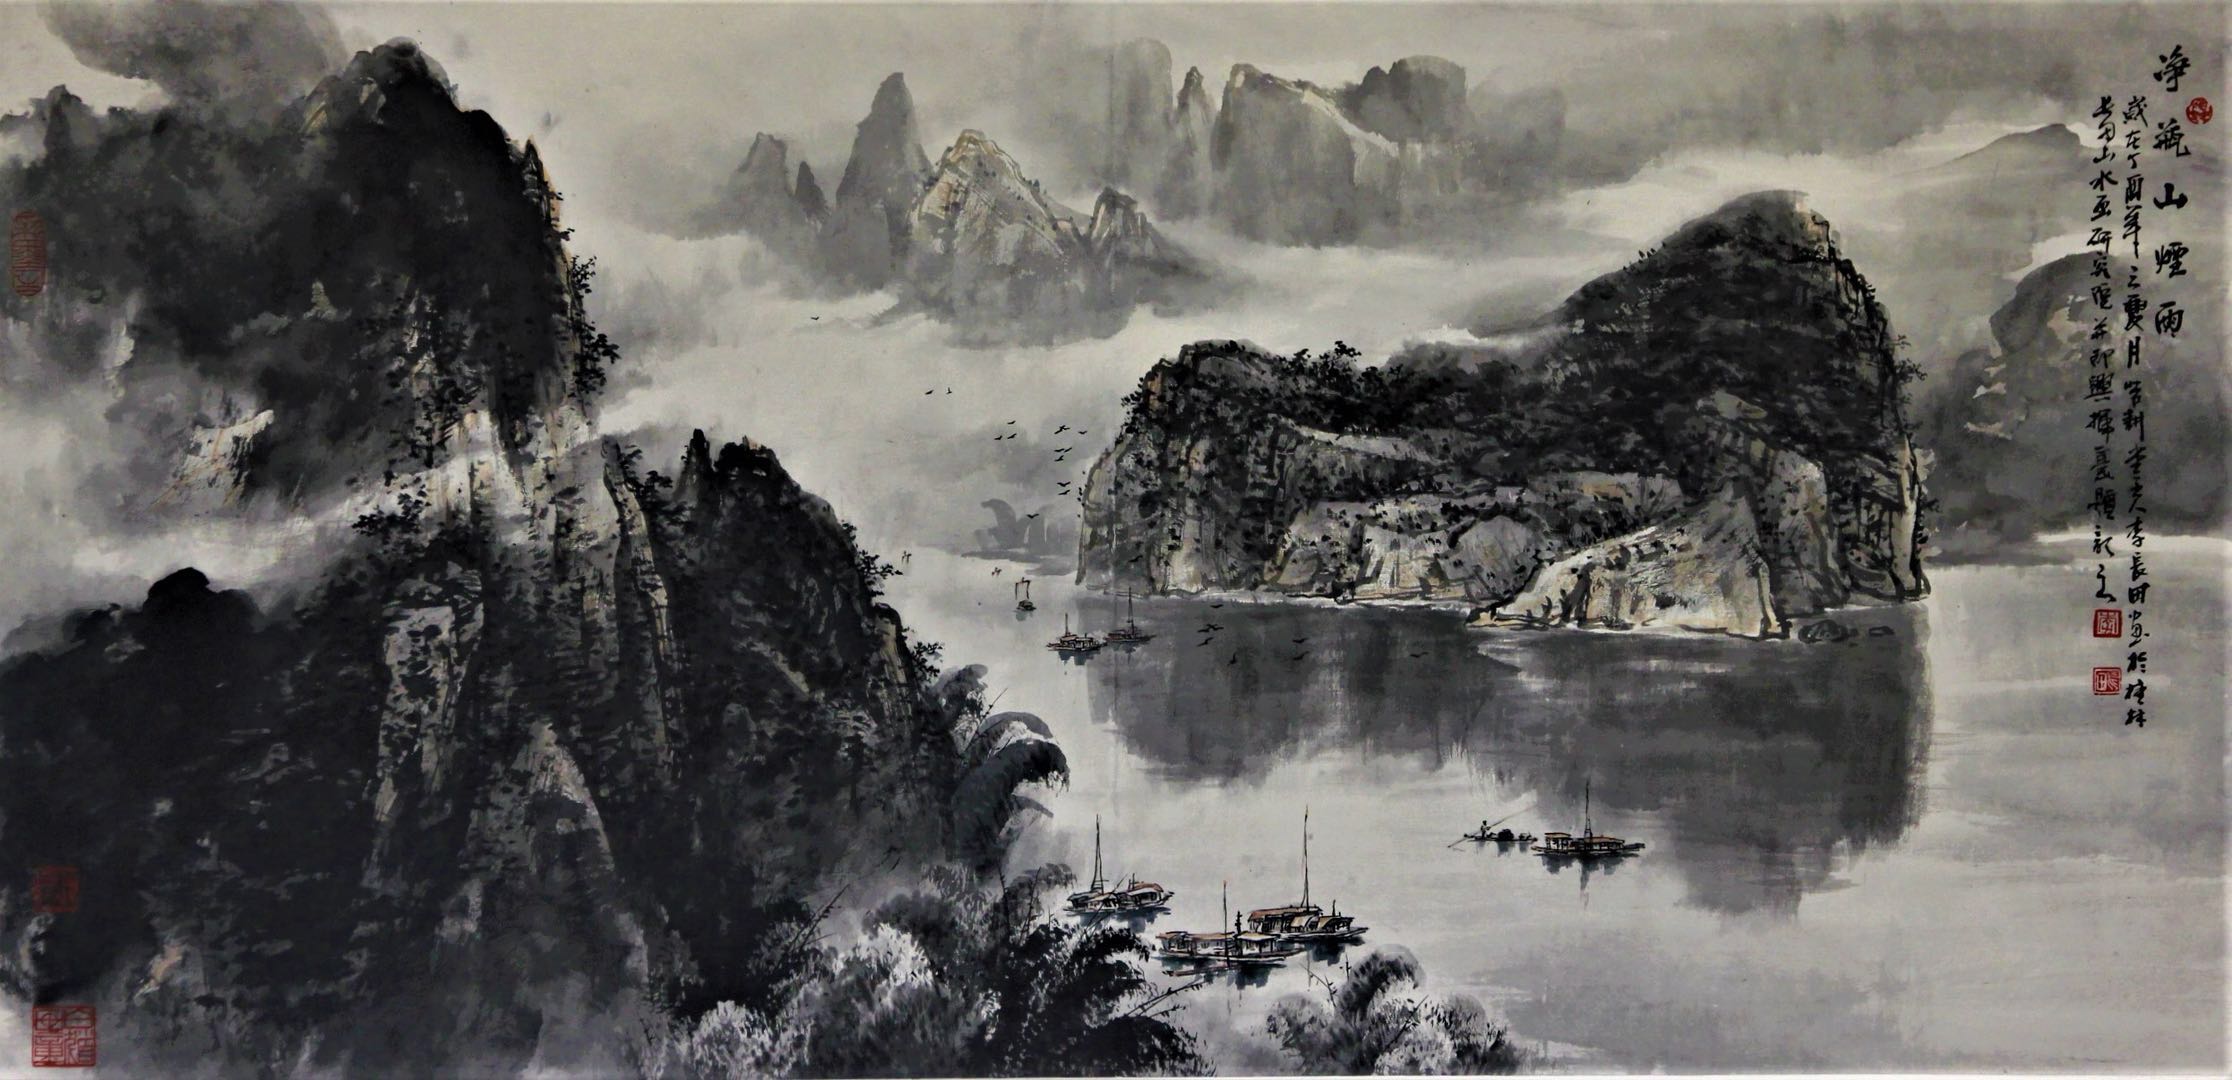 > 最新公告  李长田是近年来海内外享有良好声誉的实力派中国画家,他